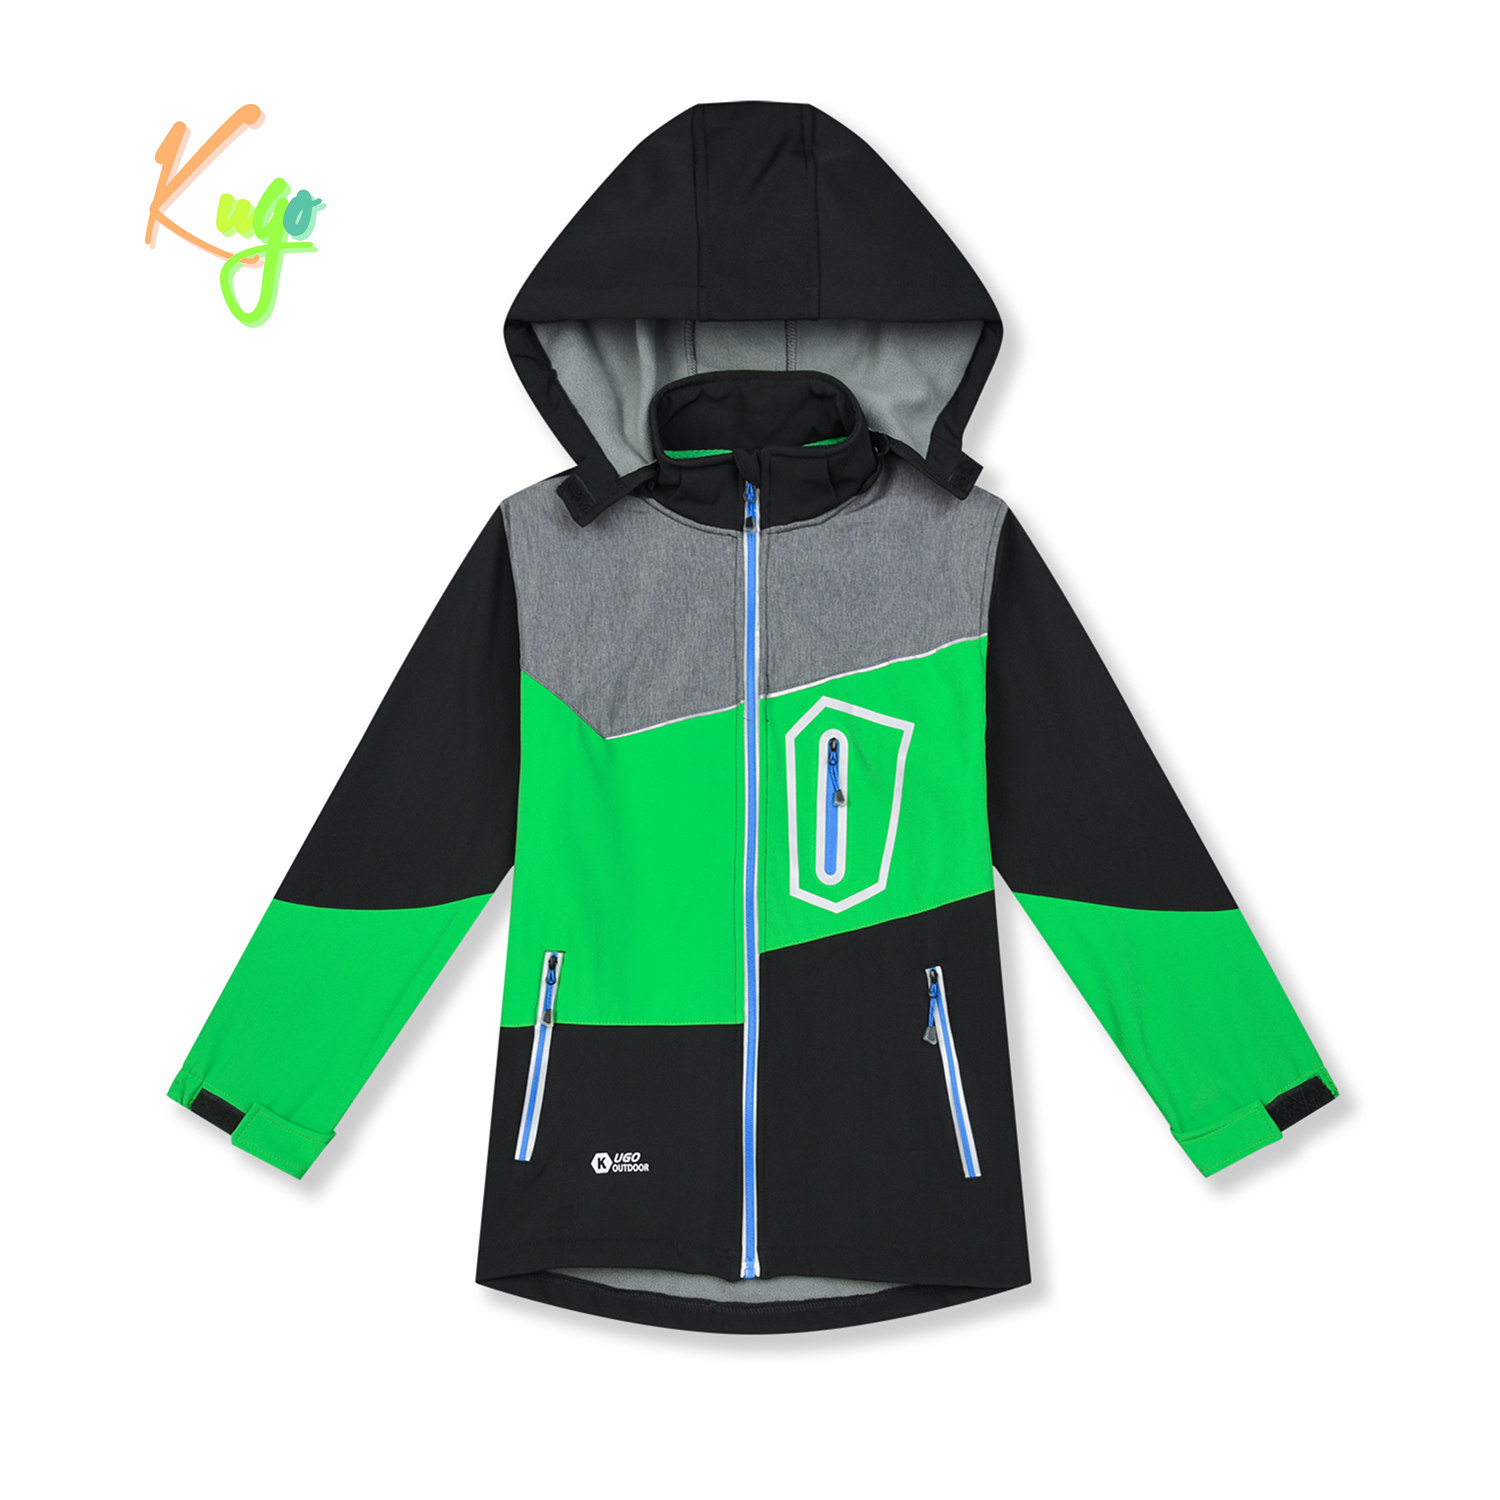 Chlapecká softshellová bunda, zateplená - KUGO HK5605, černá / zelená / šedá Barva: Černá, Velikost: 146